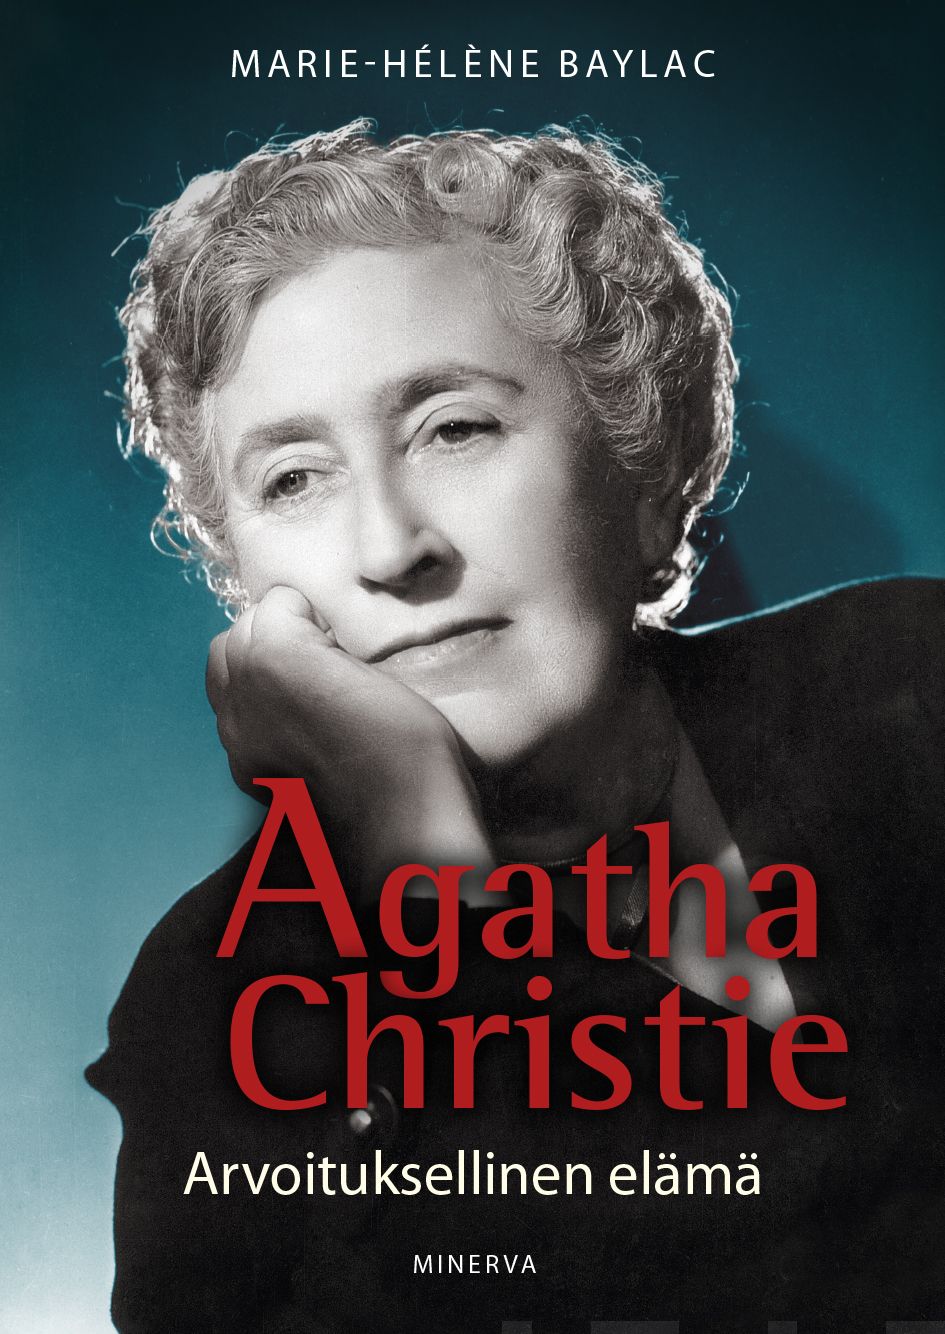 Baylac, Marie-Helene - Agatha Christie: Arvoituksellinen elämä, e-bok